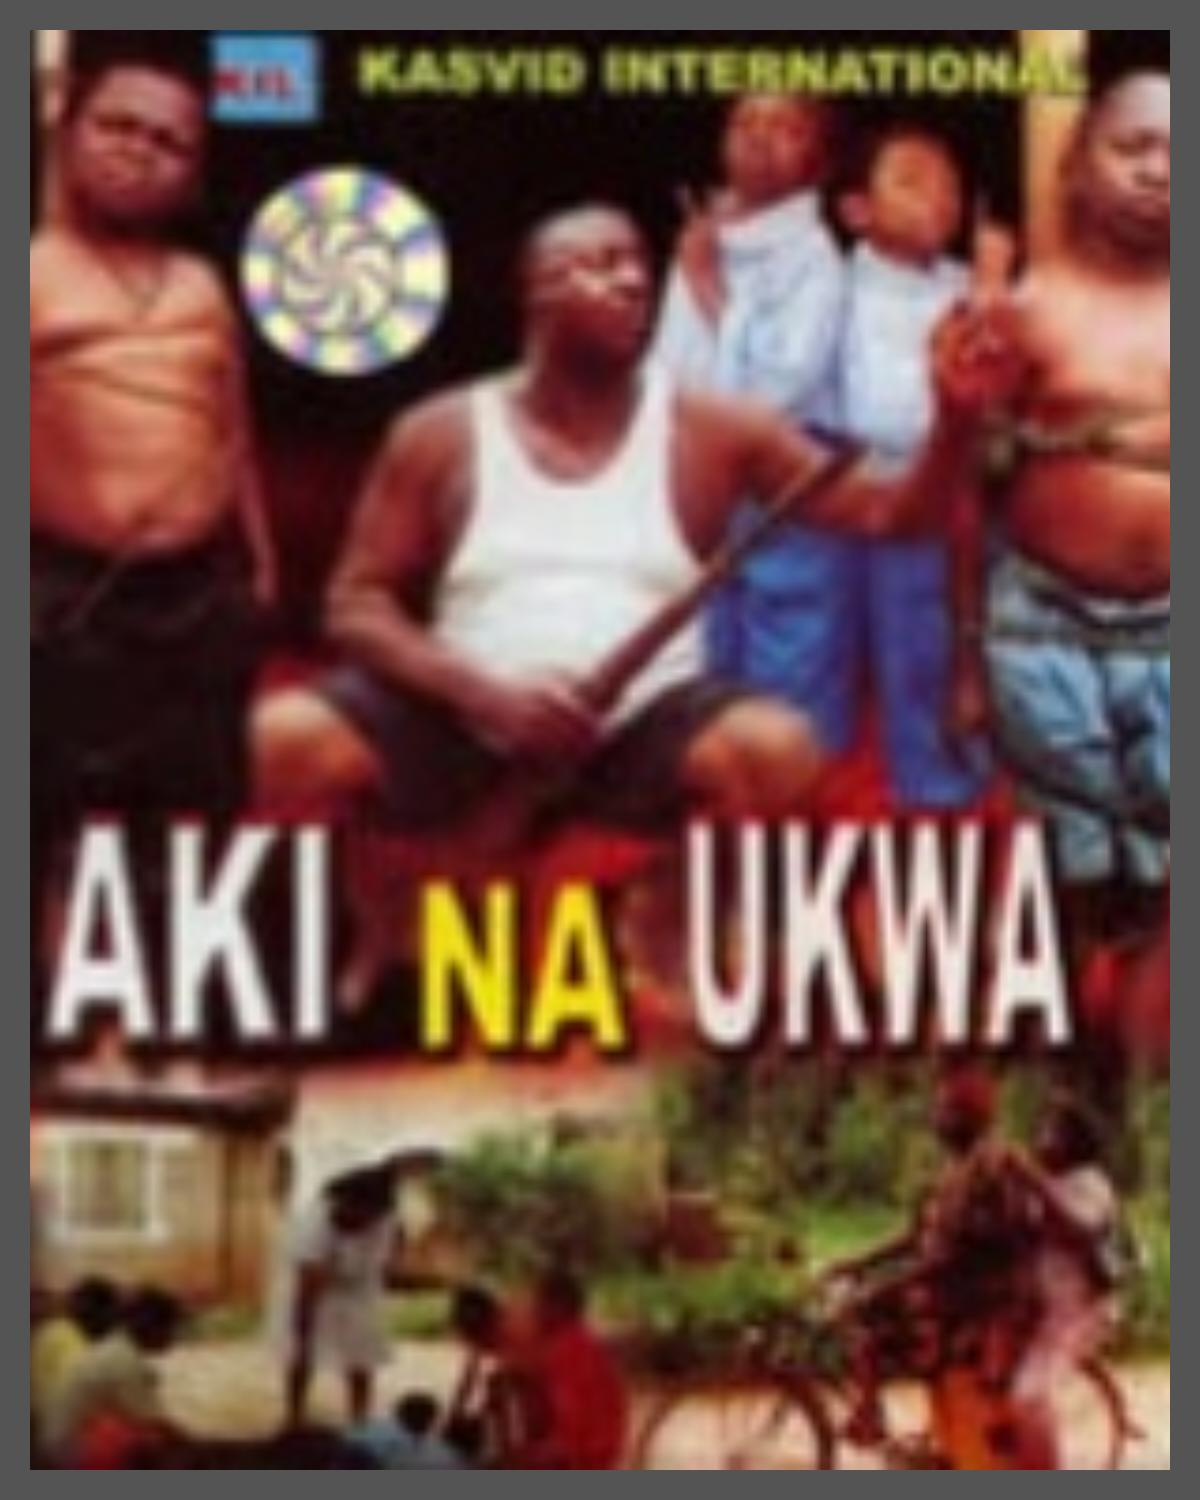 Amaechi Muonagor Nollywood Movies Aki Na Ukwa